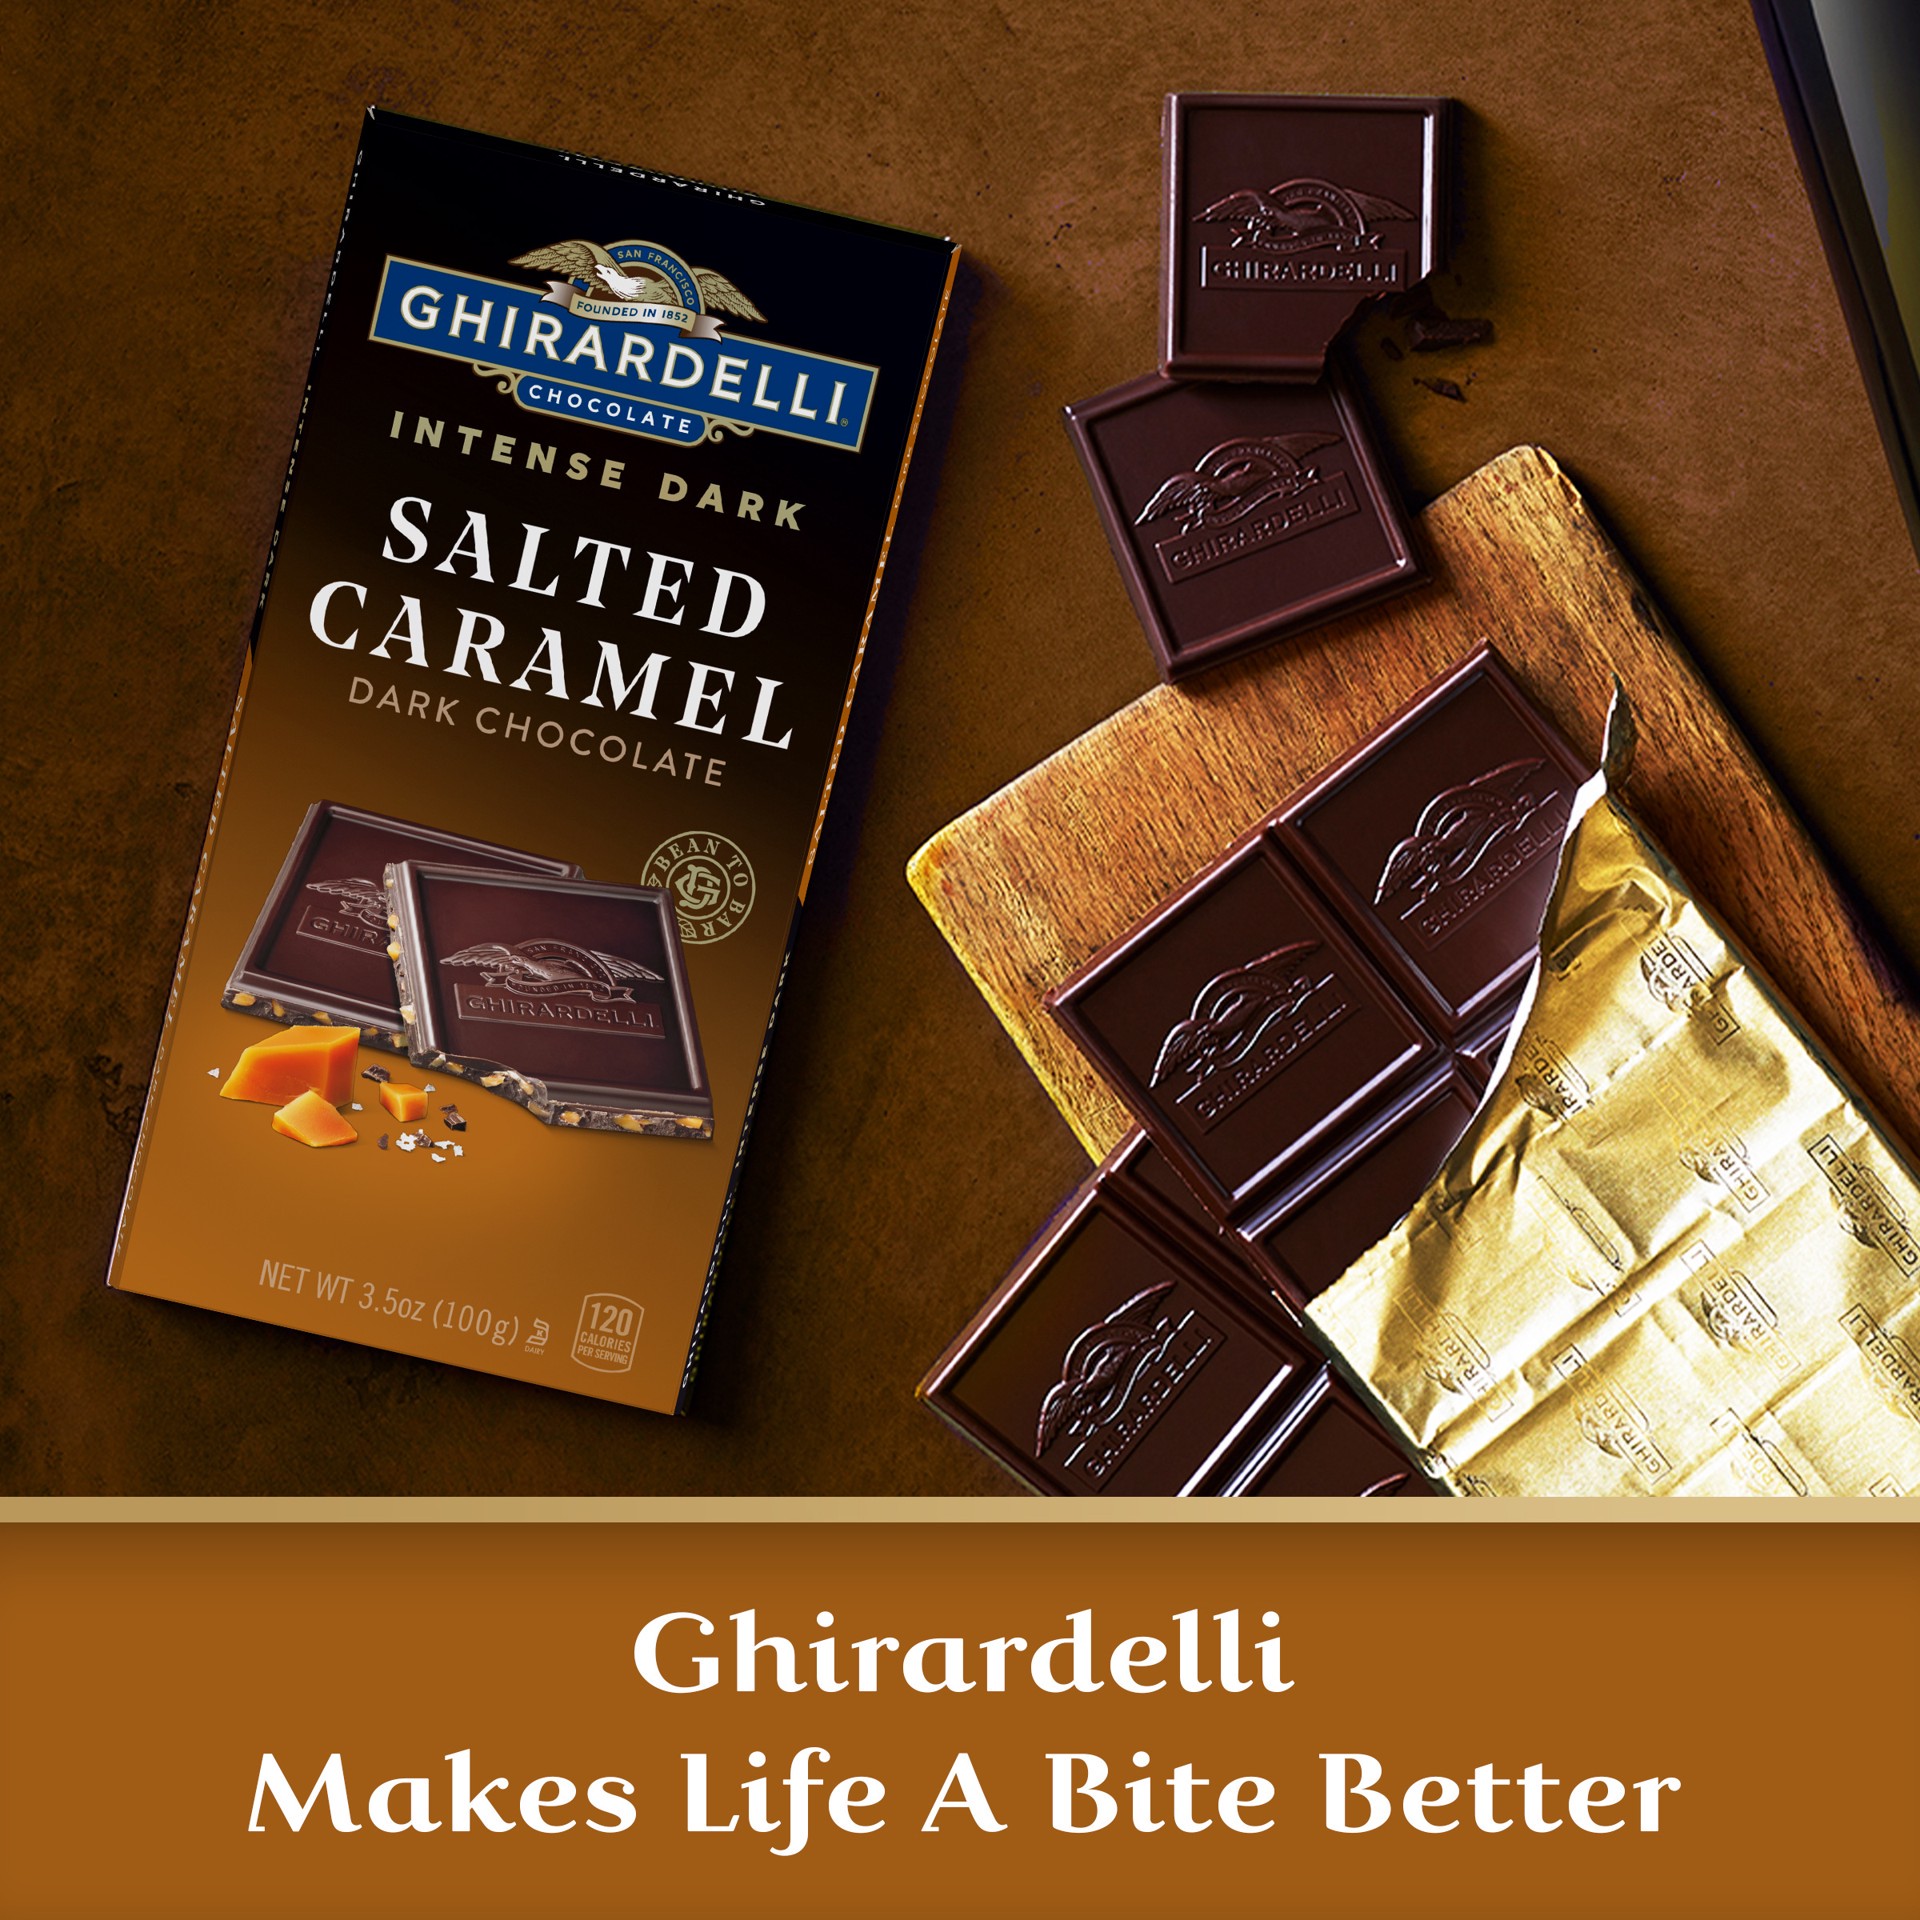 slide 6 of 8, Ghirardelli Intense Dark Salted Caramel Cascade Dark Chocolate 3.5 oz, 3.5 oz